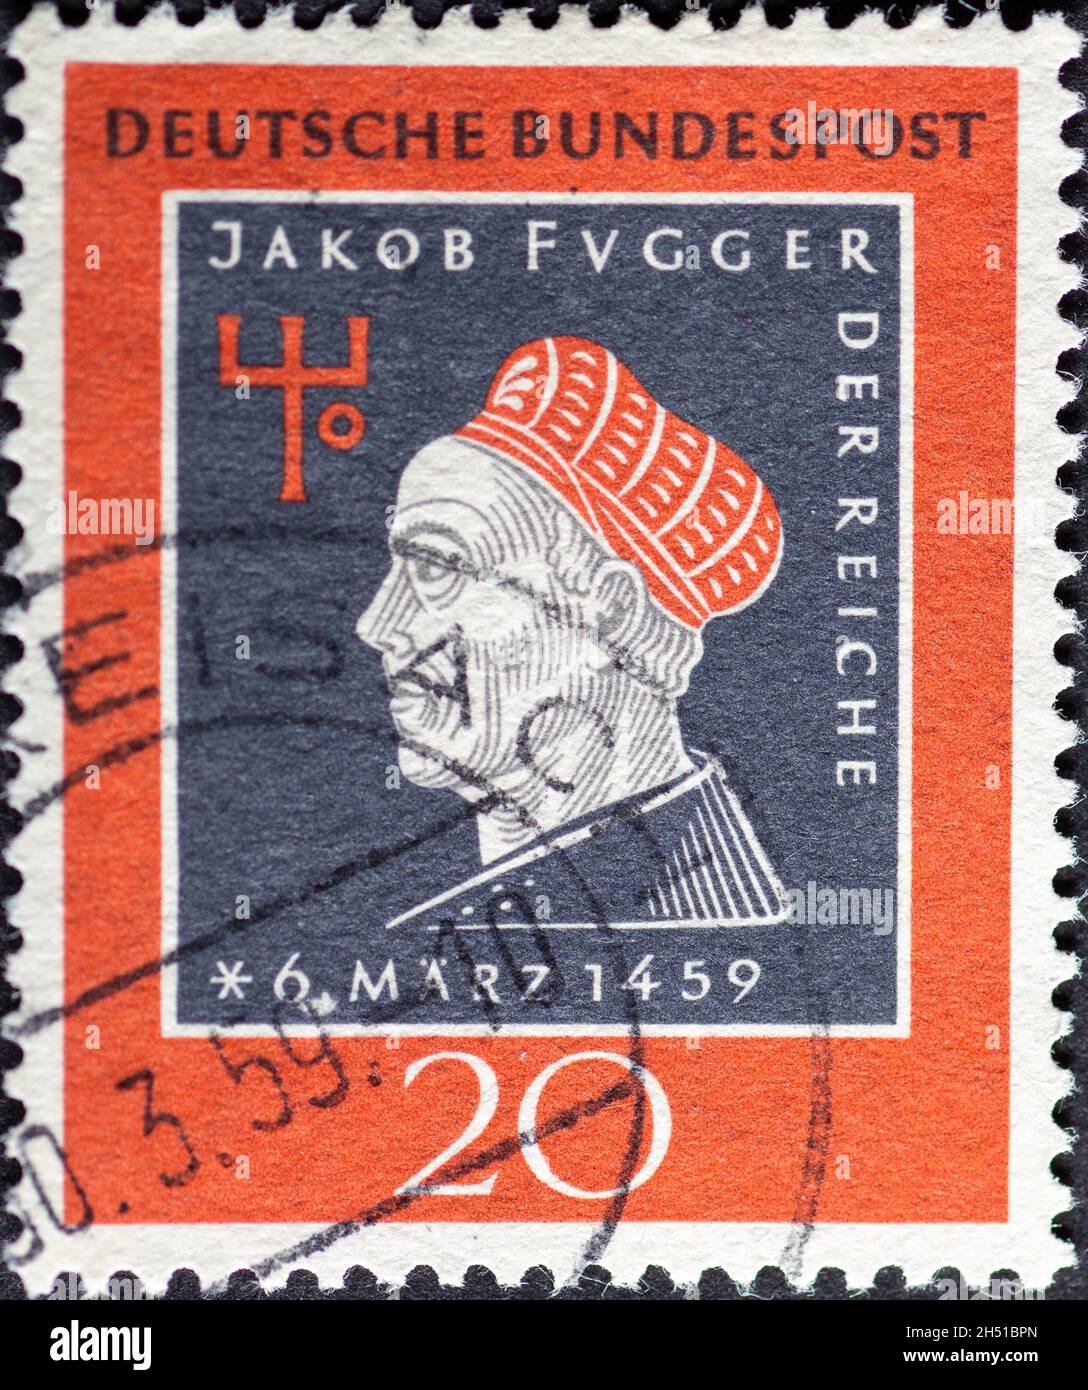 GERMANIA - CIRCA 1959: Un francobollo stampato in Germania che mostra un'immagine di Jacob Fugger i ricchi. Testo: 500 anni di compleanno Foto Stock